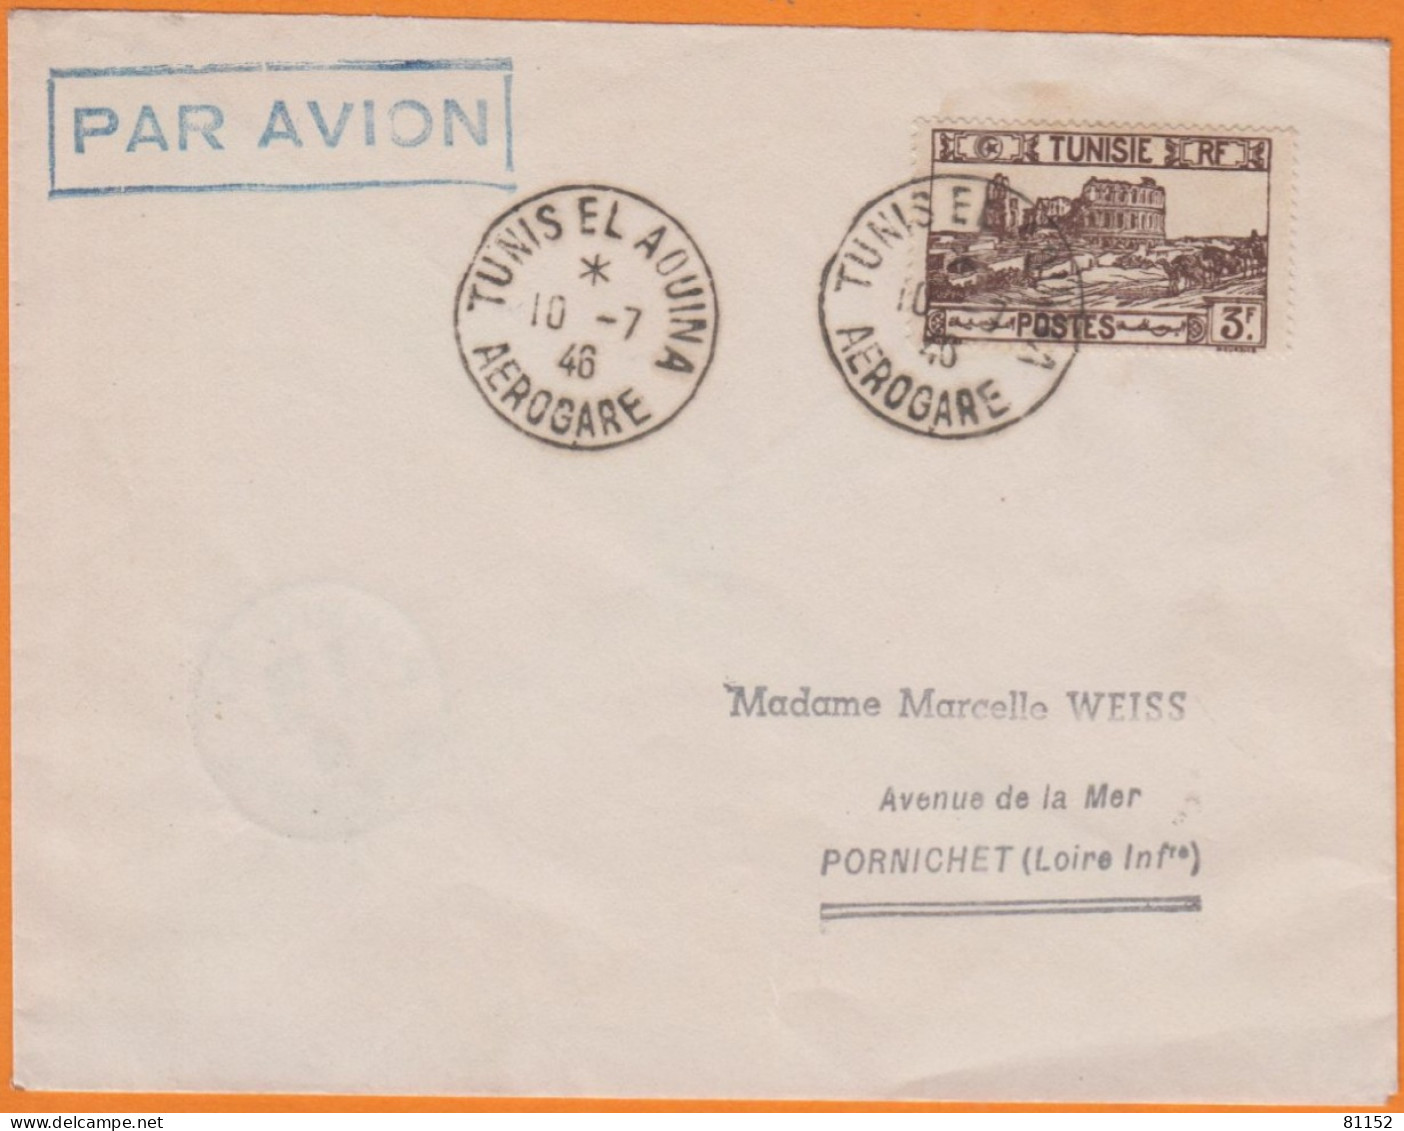 Lettre PAR AVION De TUNIS EL AOUINA  AEROGARE   Le 10 7 1947   Pour  44 PORNICHET  Affranchie à 3F - Posta Aerea